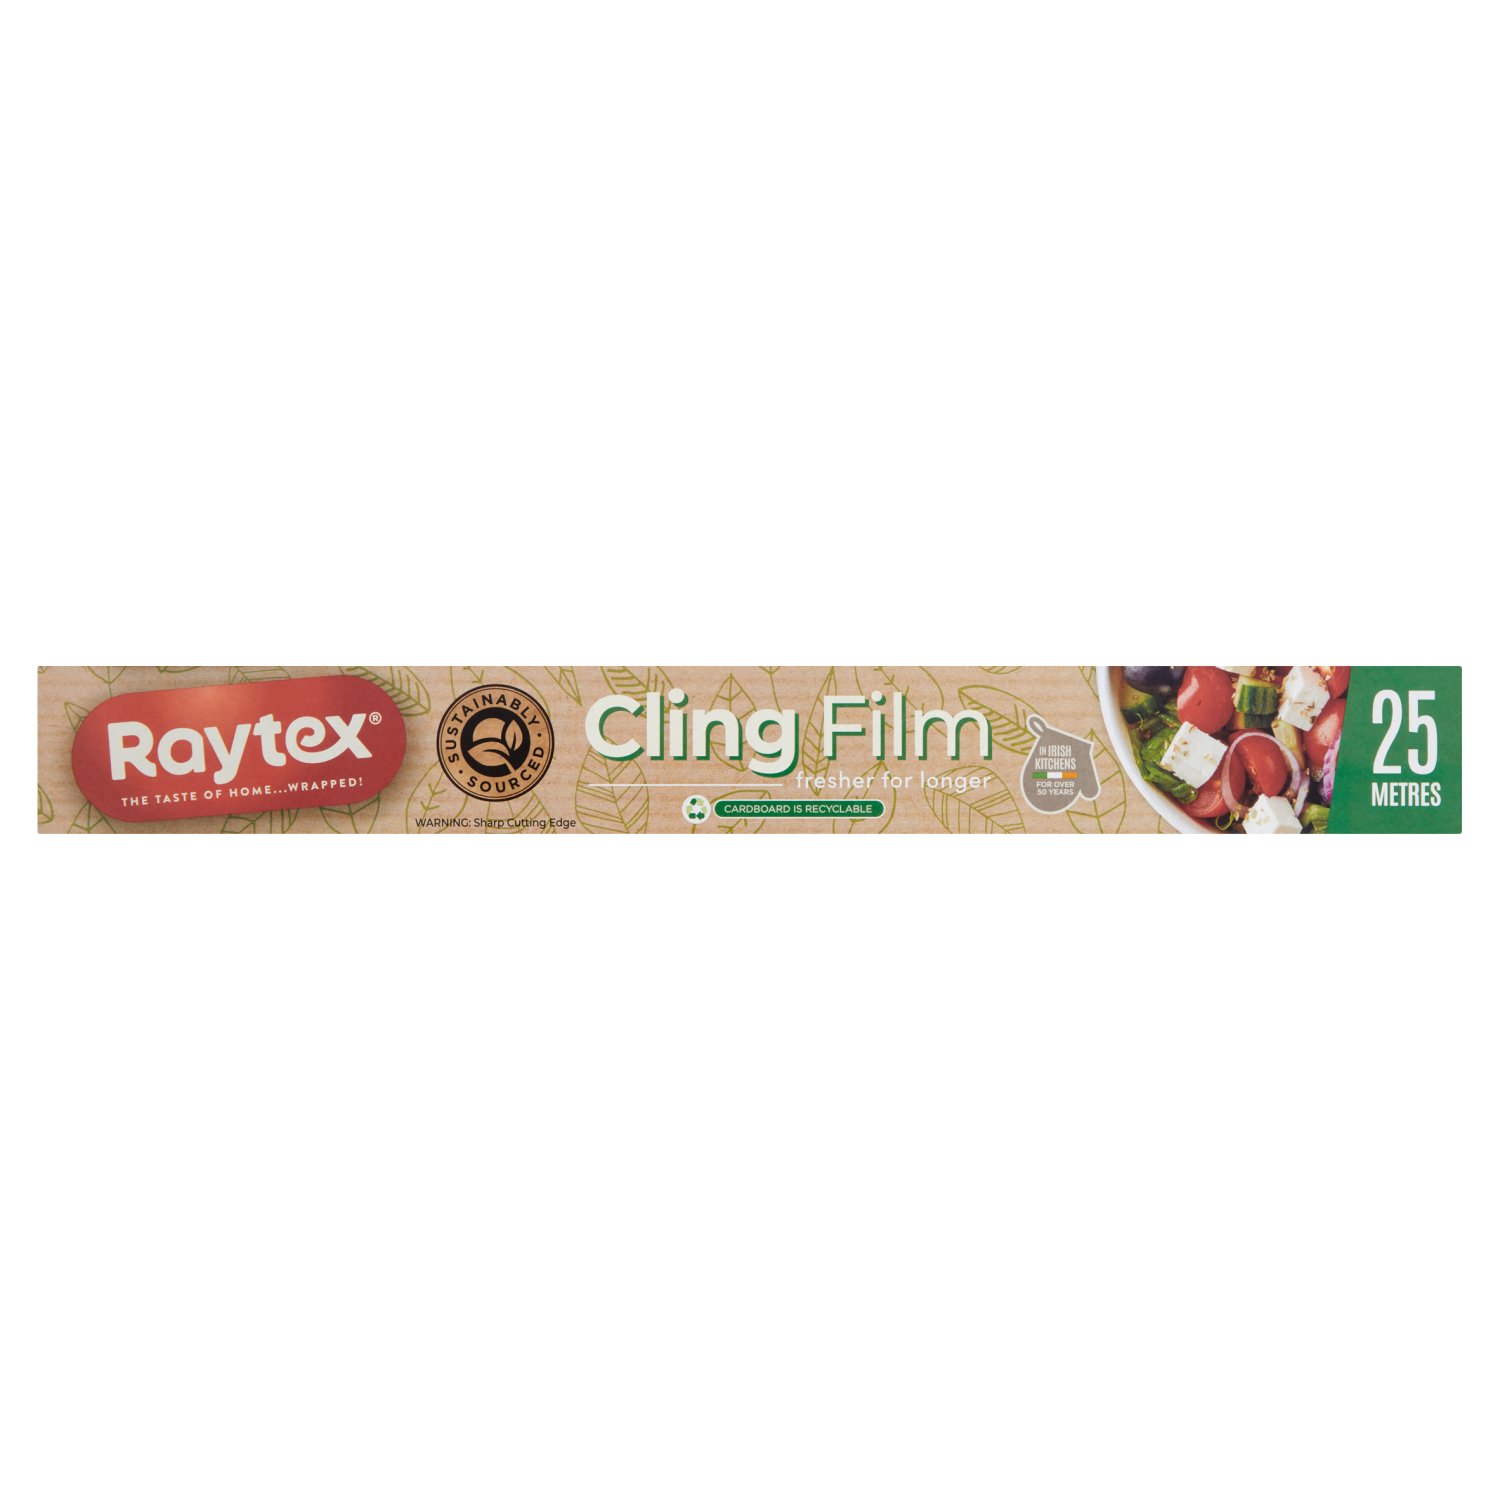 Raytex Cling Film 300 Metres (25 m)